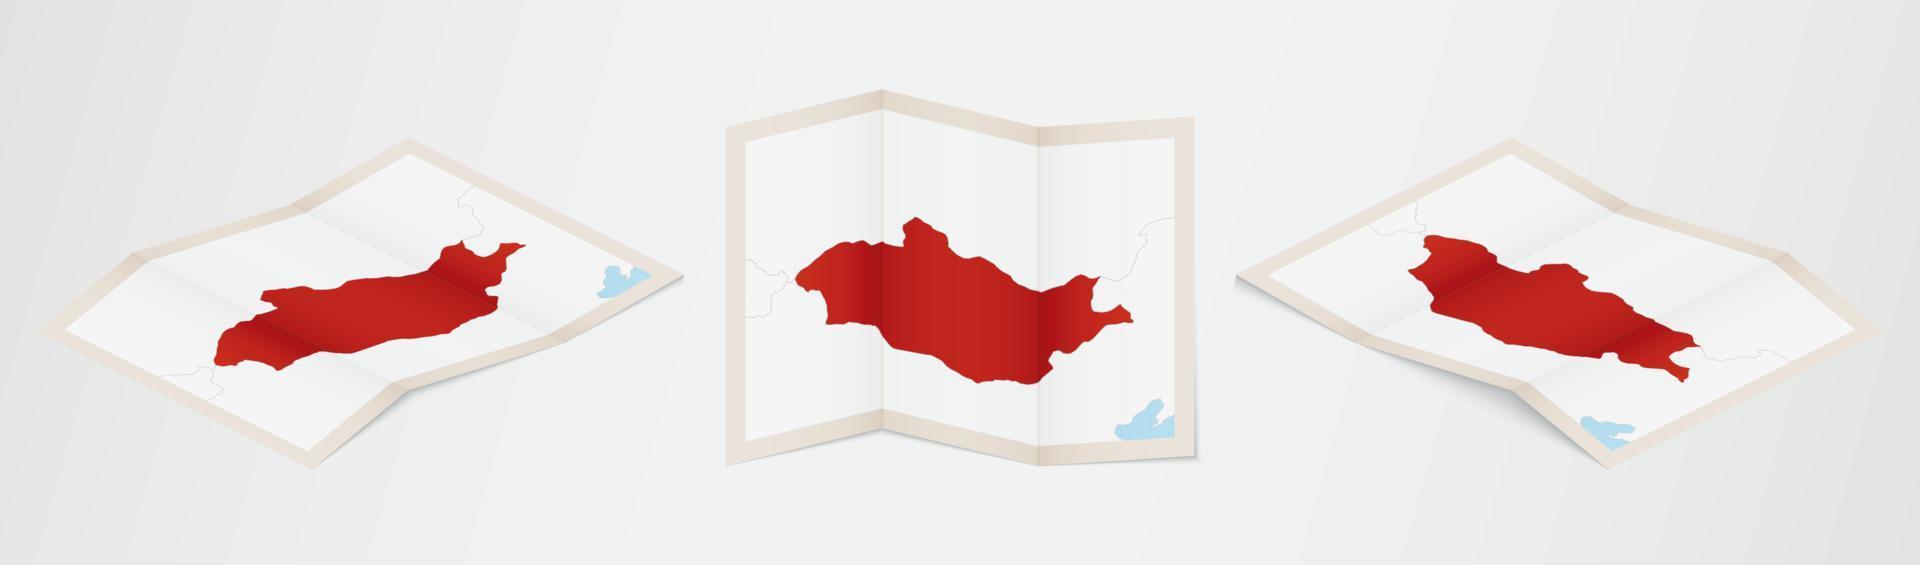 piegato carta geografica di Mongolia nel tre diverso versioni. vettore